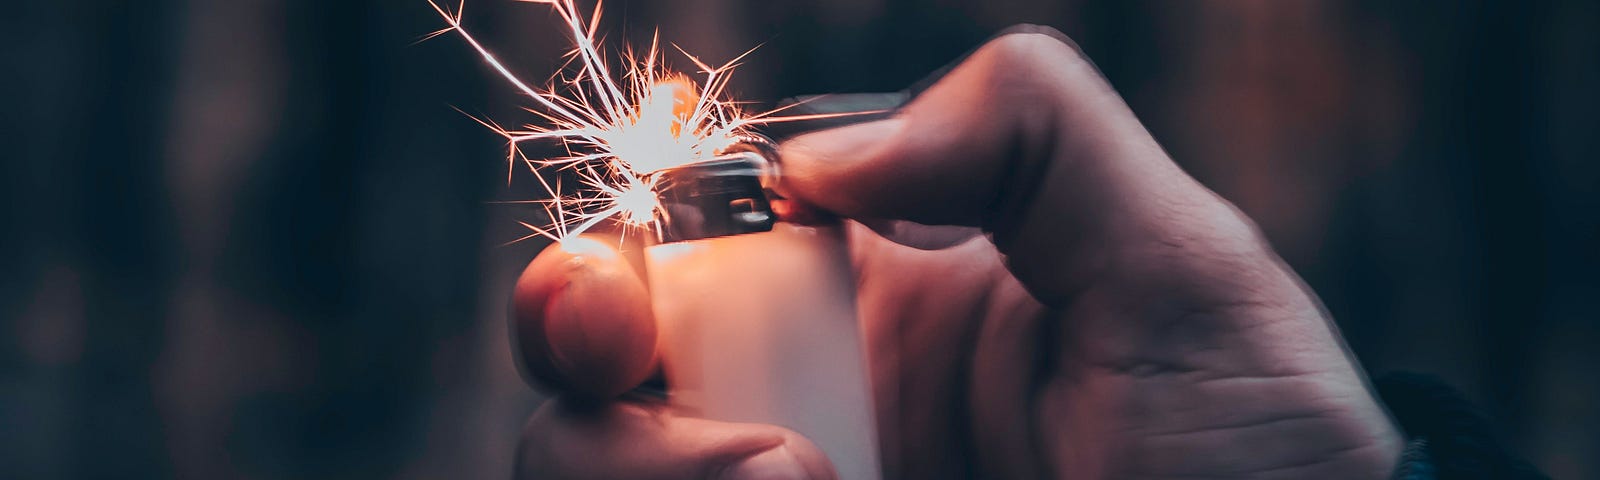 Hand lighting up a lighter